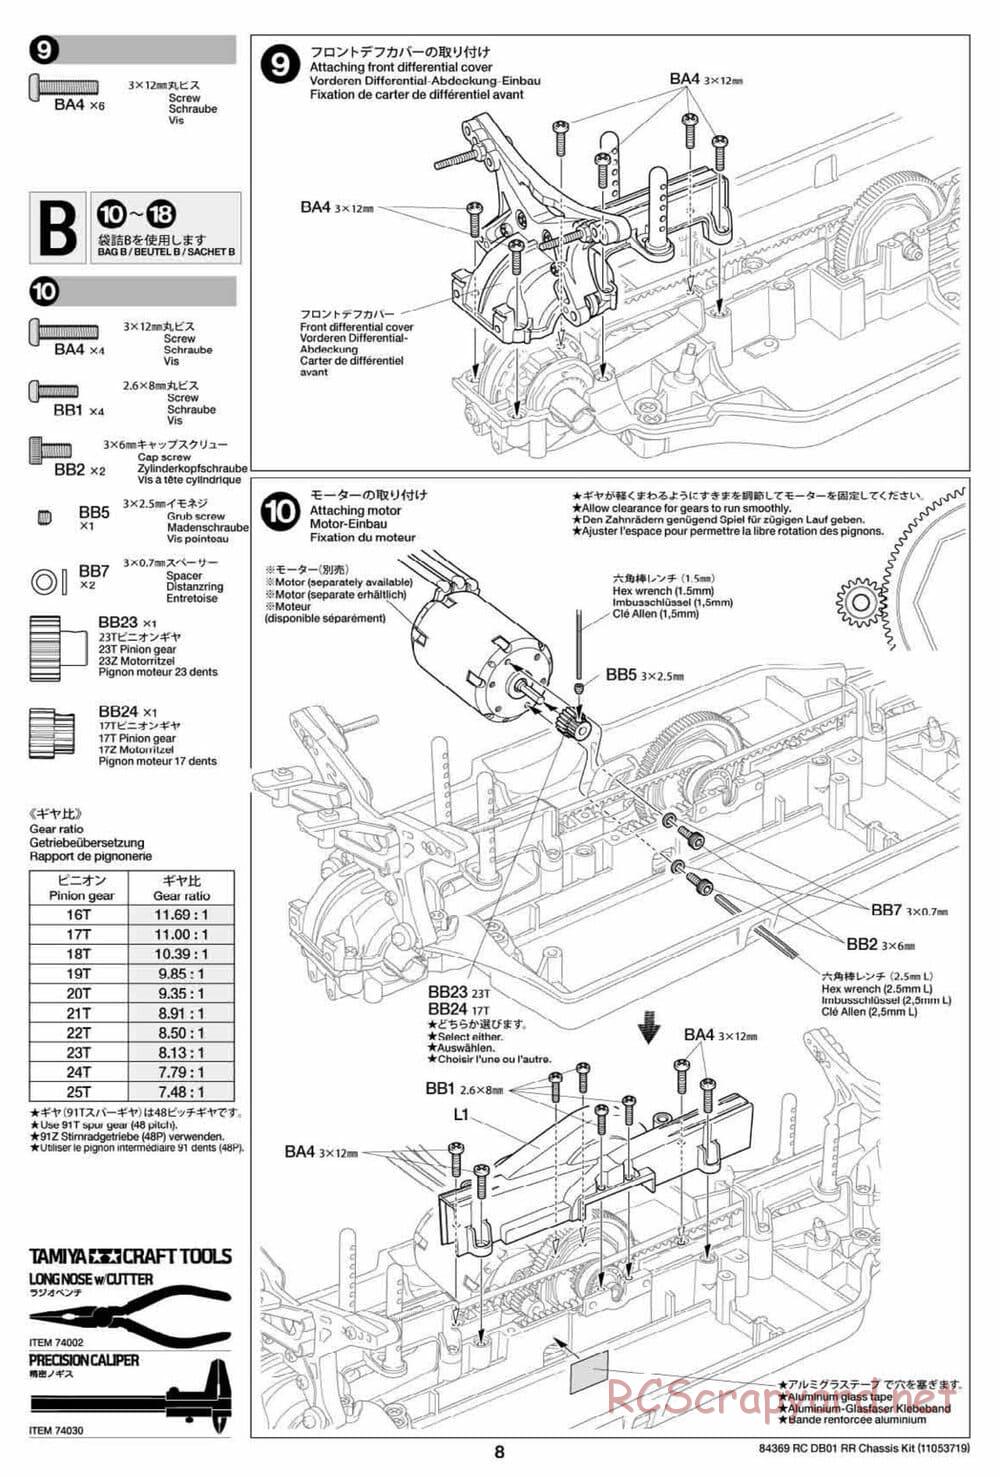 Tamiya - DB-01 RR Chassis - Manual - Page 8